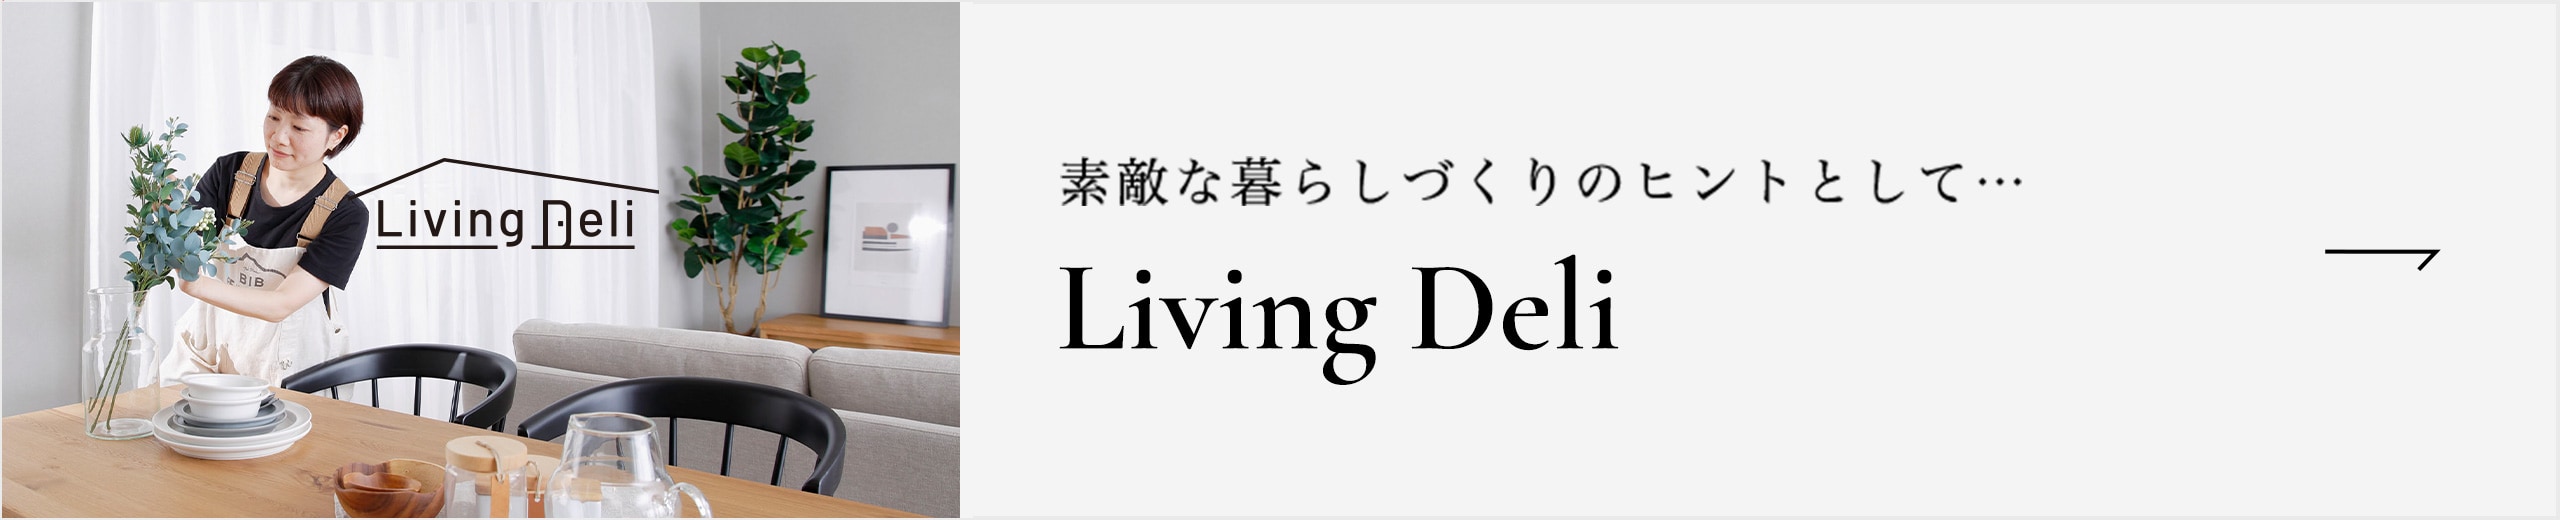 fGȕ炵ẪqgƂāc Living Deli